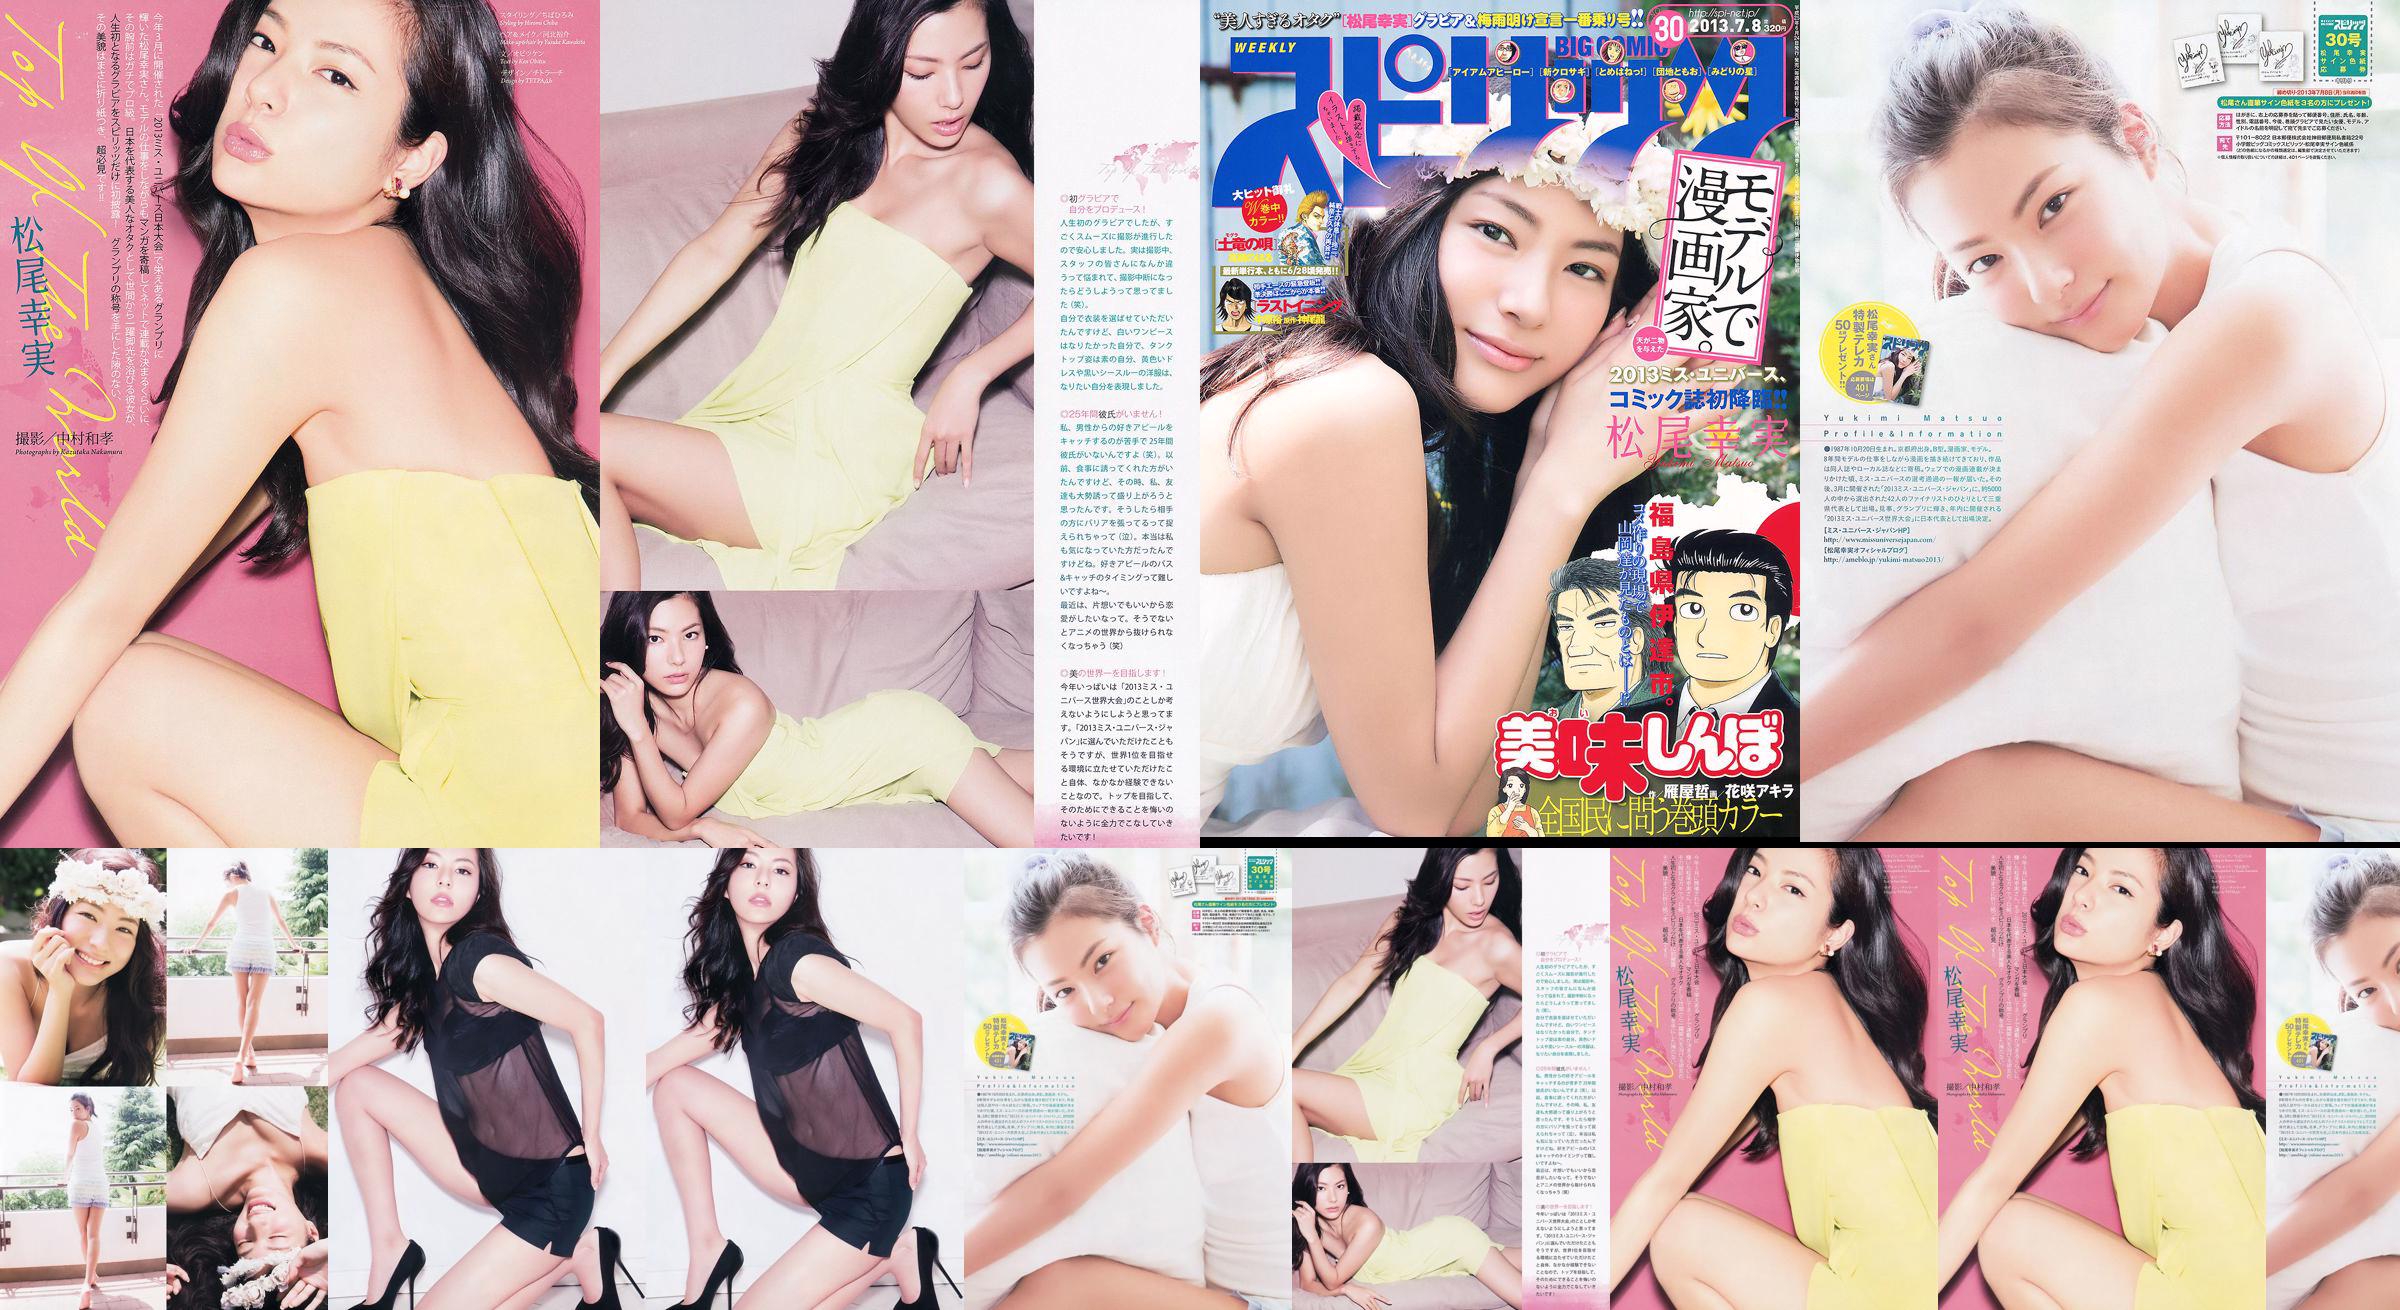 [Weekly Big Comic Spirits] Komi Matsuo 2013 No.30 Photo Magazine No.0612f4 Trang 1